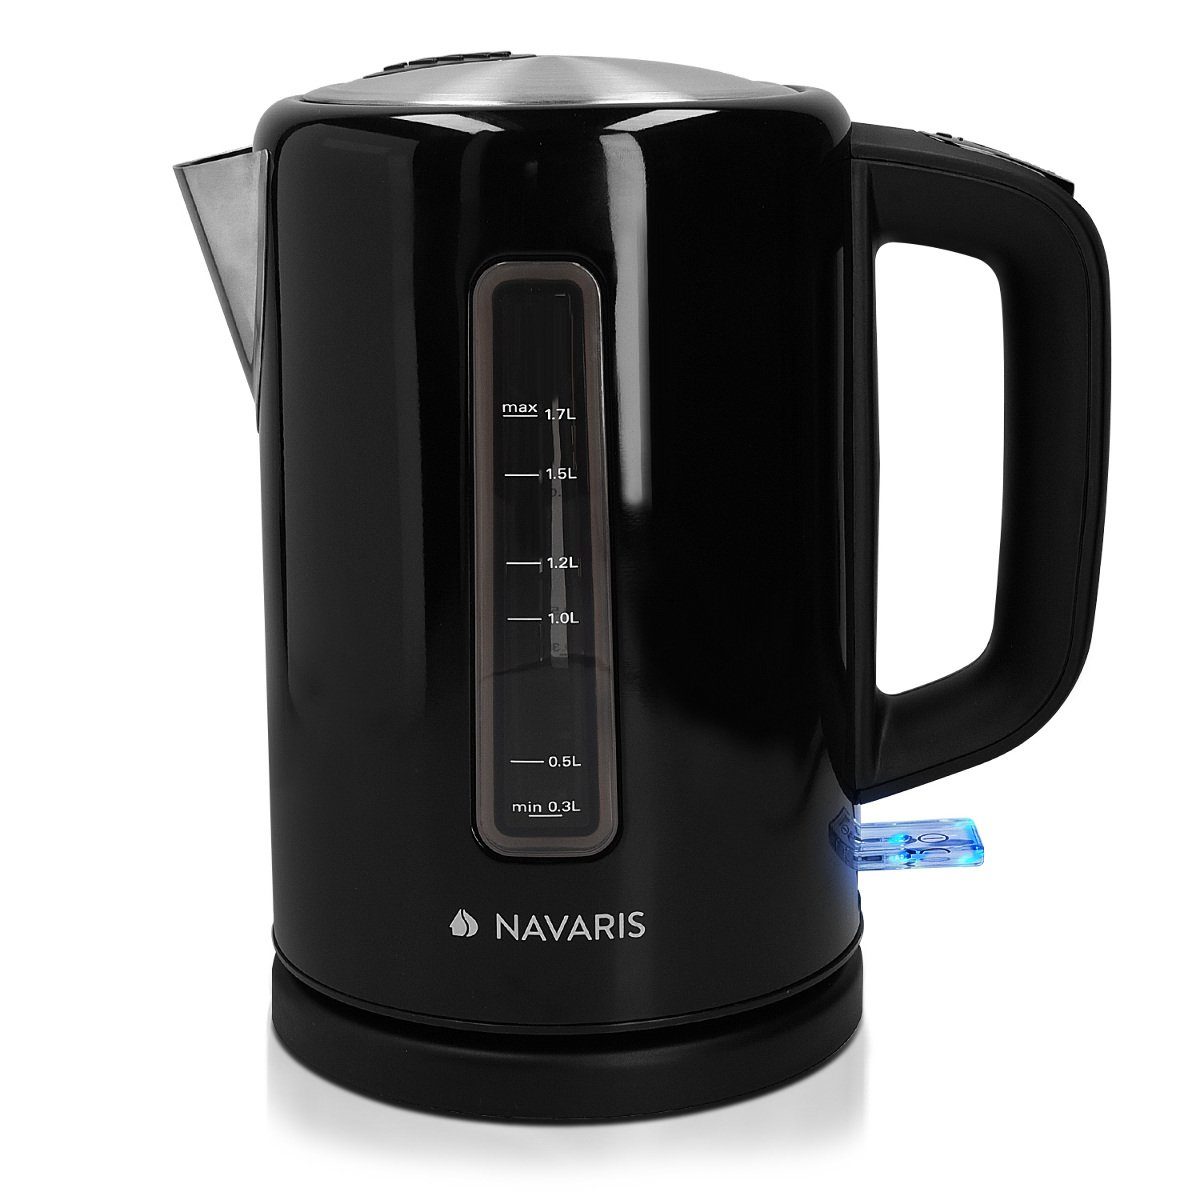 Navaris Heißgetränke- und Glühweinautomat - 1,7l Kocher - Abschaltautomatik Edelstahl 2200W Wasser